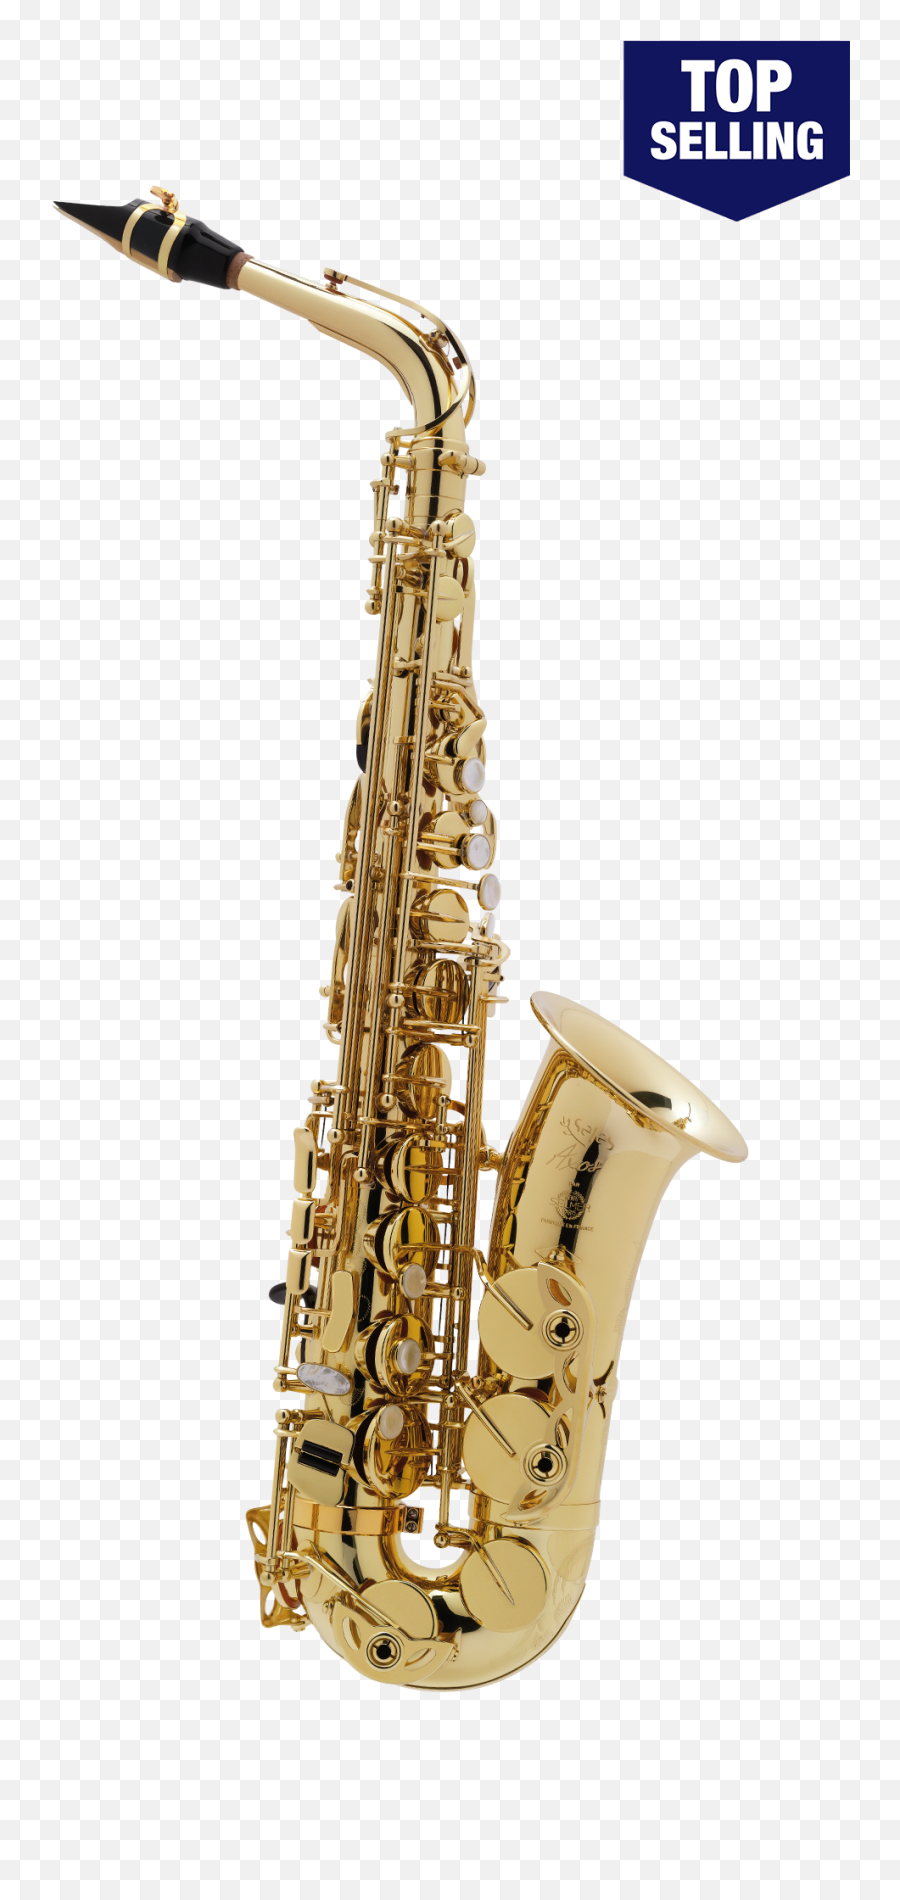 52axos Henri Selmer Paris Alto Saxophone - Henri Selmer Paris Alto Saxophone Png,Saxophone Transparent